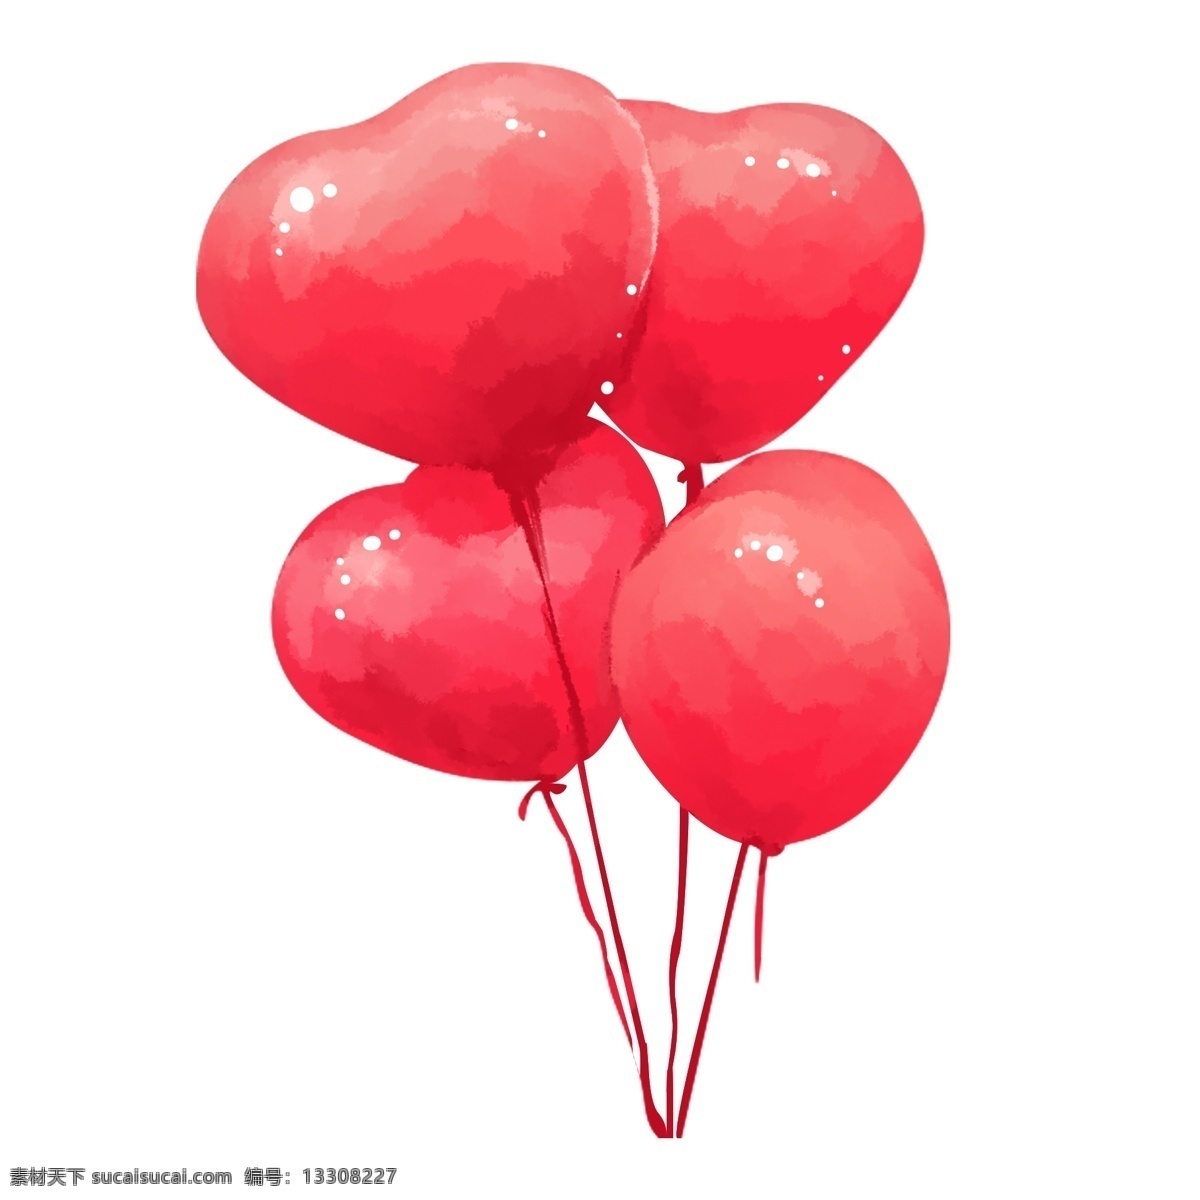 红色 爱心 气球 插画 红色气球 手绘红气球 节日 爱情 浪漫 爱心气球插画 情人节 装饰 飘起的气球